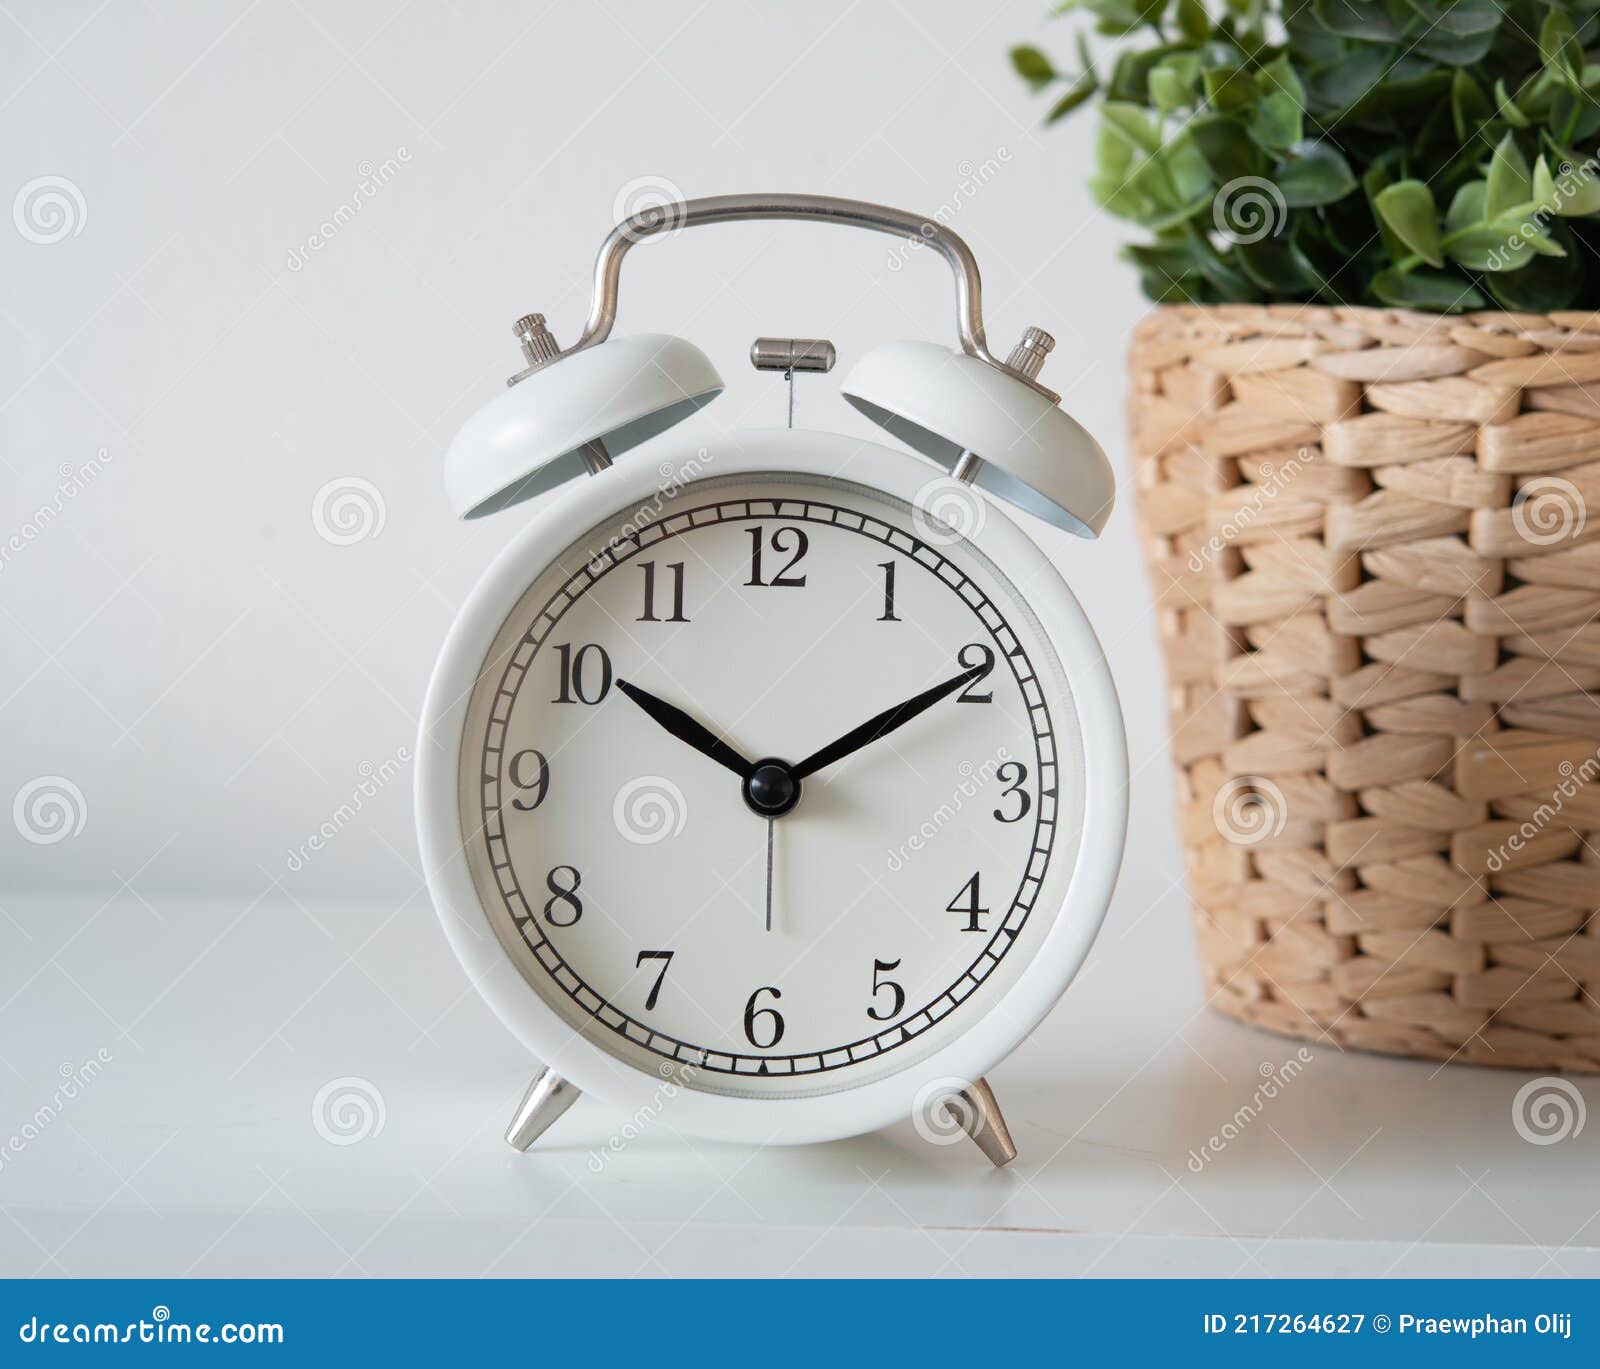 El Reloj Despertador Vintage Blanco Que Muestra El Tiempo 10 0clock En La  Mañana Al Lado De La Ventana Bajo La Luz De La Mañana. Imagen de archivo -  Imagen de imagen